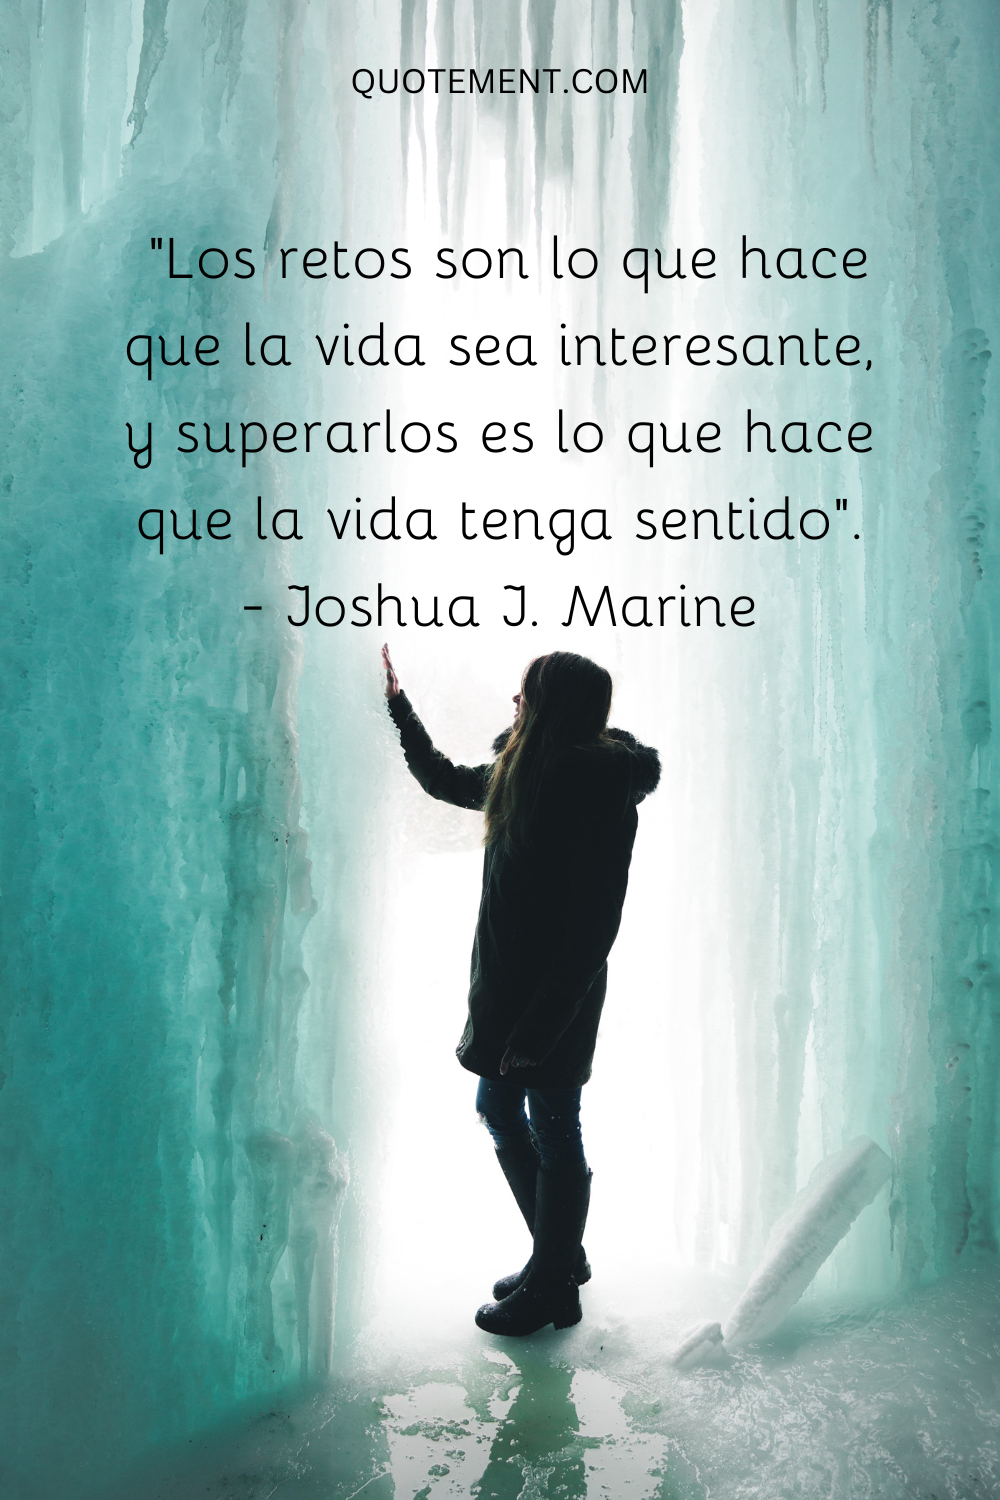 "Los retos son lo que hace que la vida sea interesante, y superarlos es lo que hace que la vida tenga sentido". - Joshua J. Marine